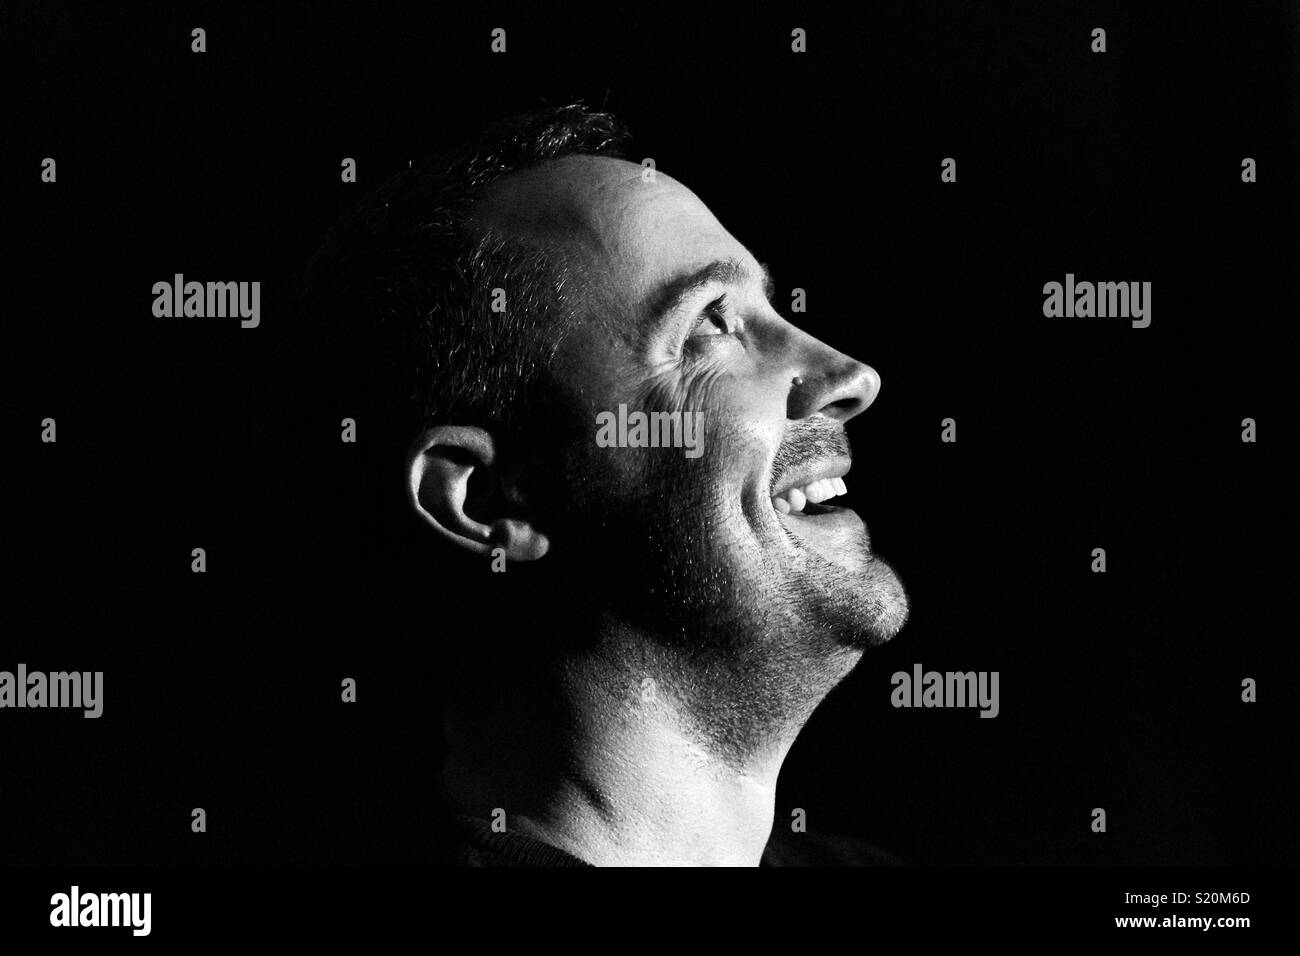 Ein Mann sieht glücklich und Lachen im Mondlicht. Low Key schwarz und weiß Profil Silhouette Foto auf schwarzem Hintergrund Stockfoto